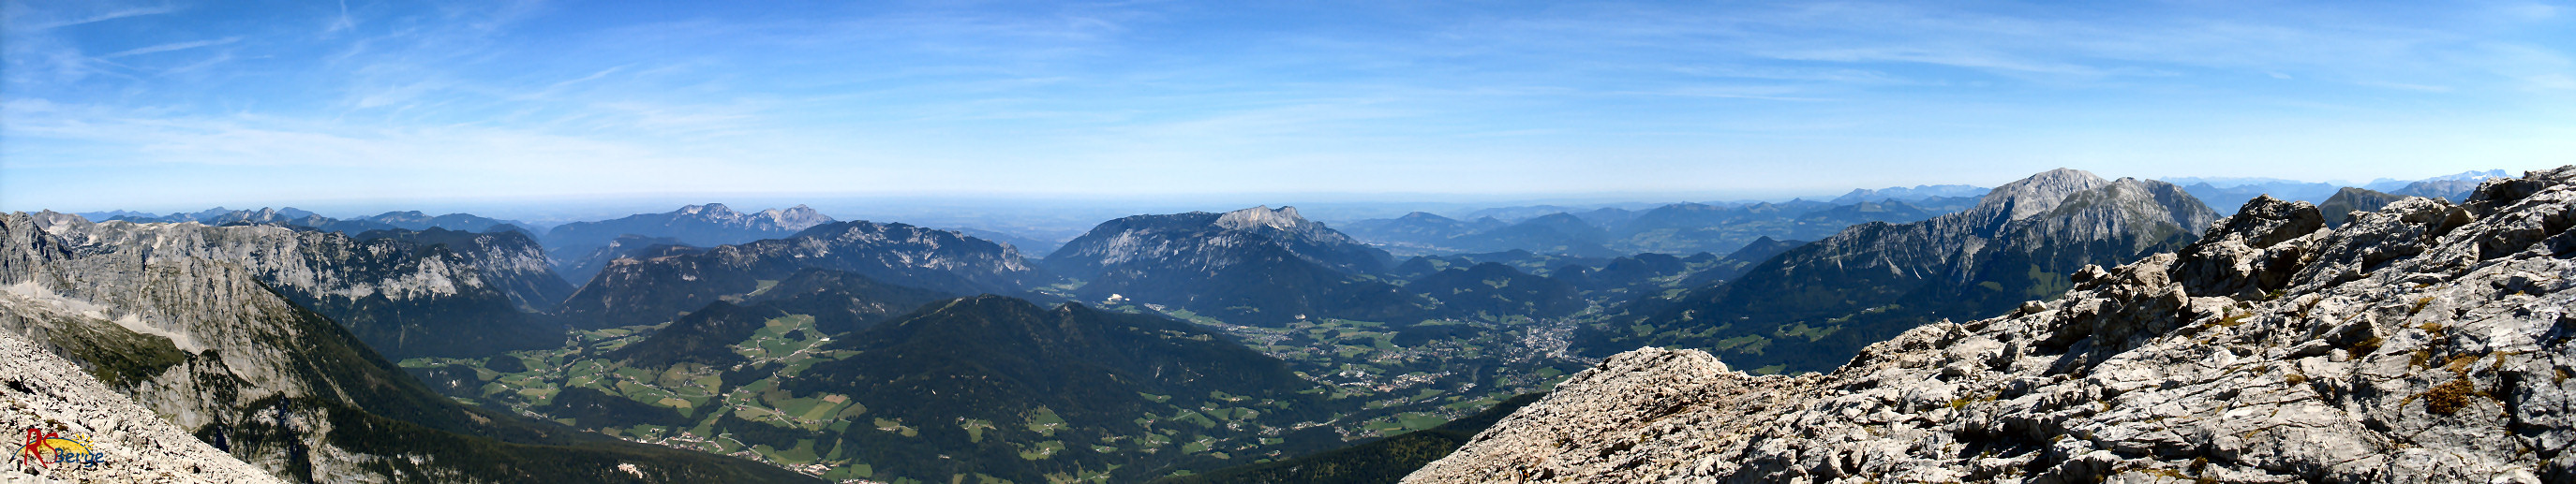 Wanderung Watzmann in den Berchtesgadener Alpen: Panorama beim Aufstieg zum Hocheck